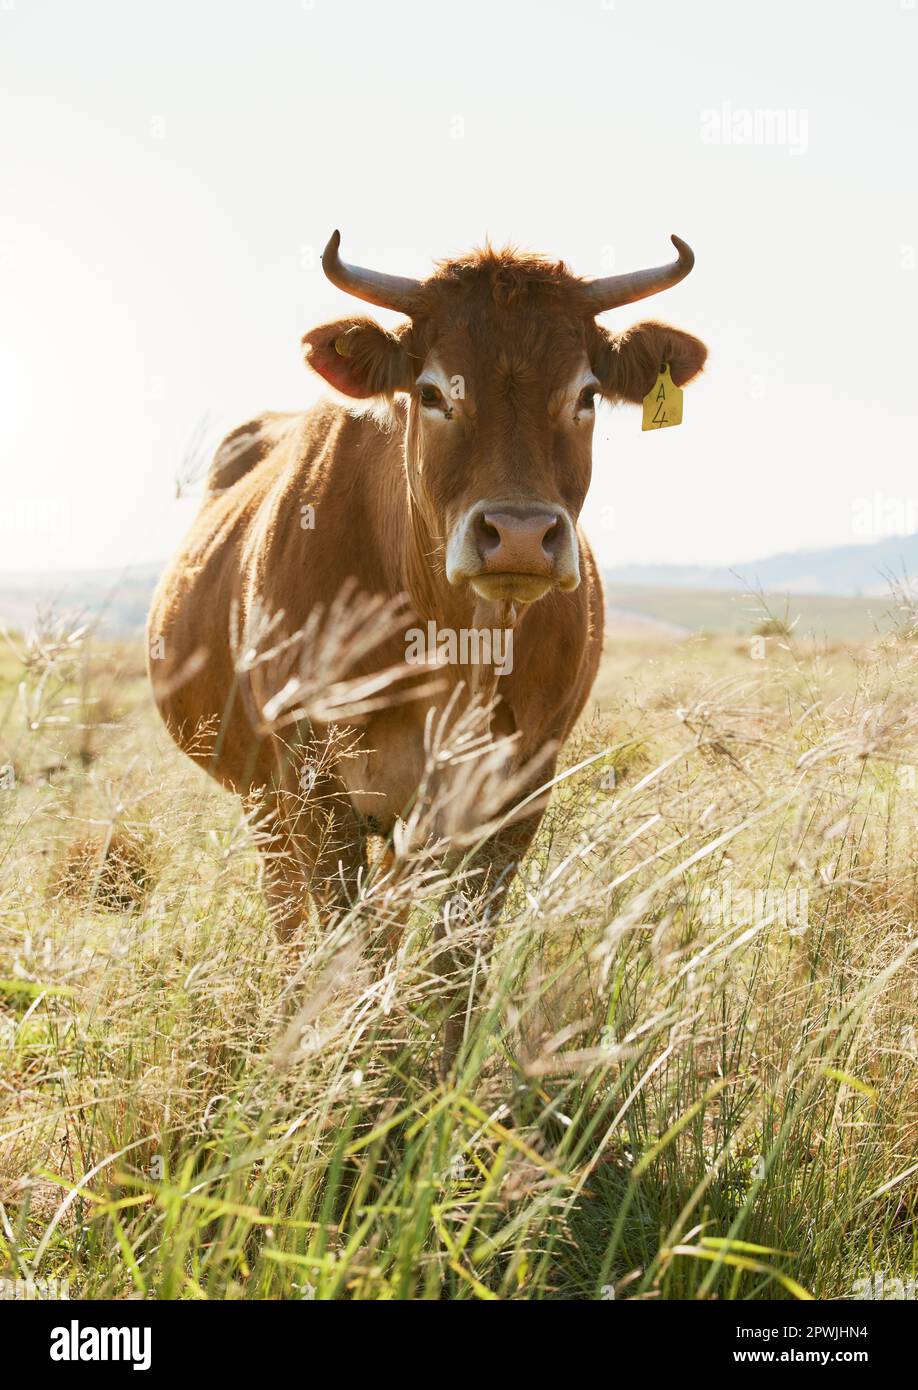 Agricoltura, fattoria e ritratto di una mucca in campagna per l'agricoltura, la produzione di latte e latticini, calma e contenuto. Agricoltura sostenibile, bovini e anime Foto Stock